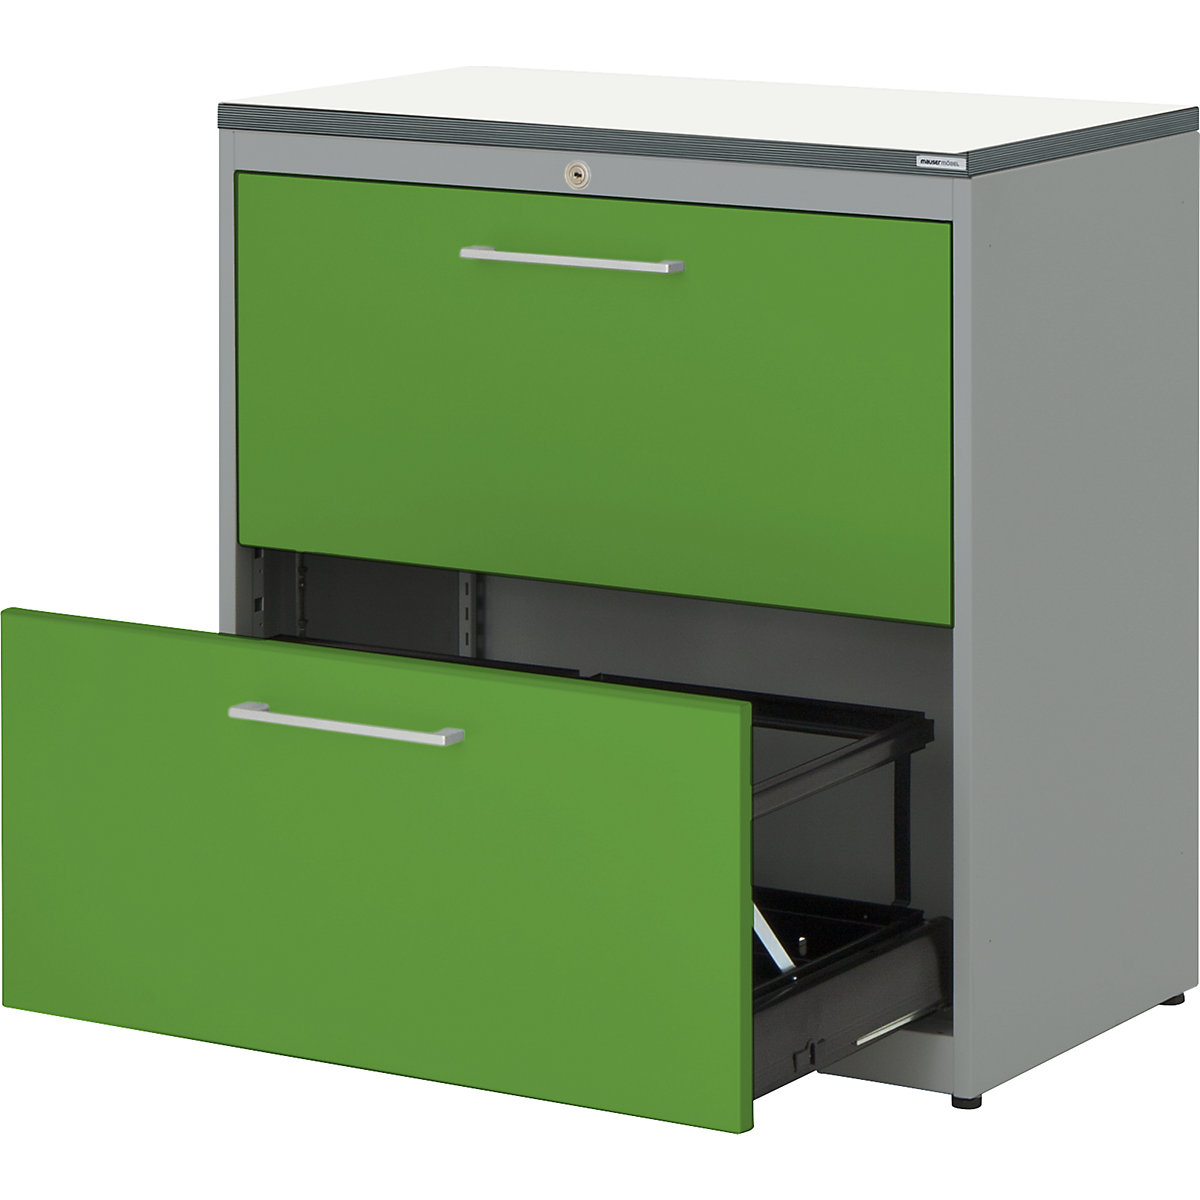 mauser – Dulap pentru registratură suspendată, placă superioară din plastic, 2 sertare, 2 rânduri, cu amortizare, alb aluminiu / verde gălbui / alb